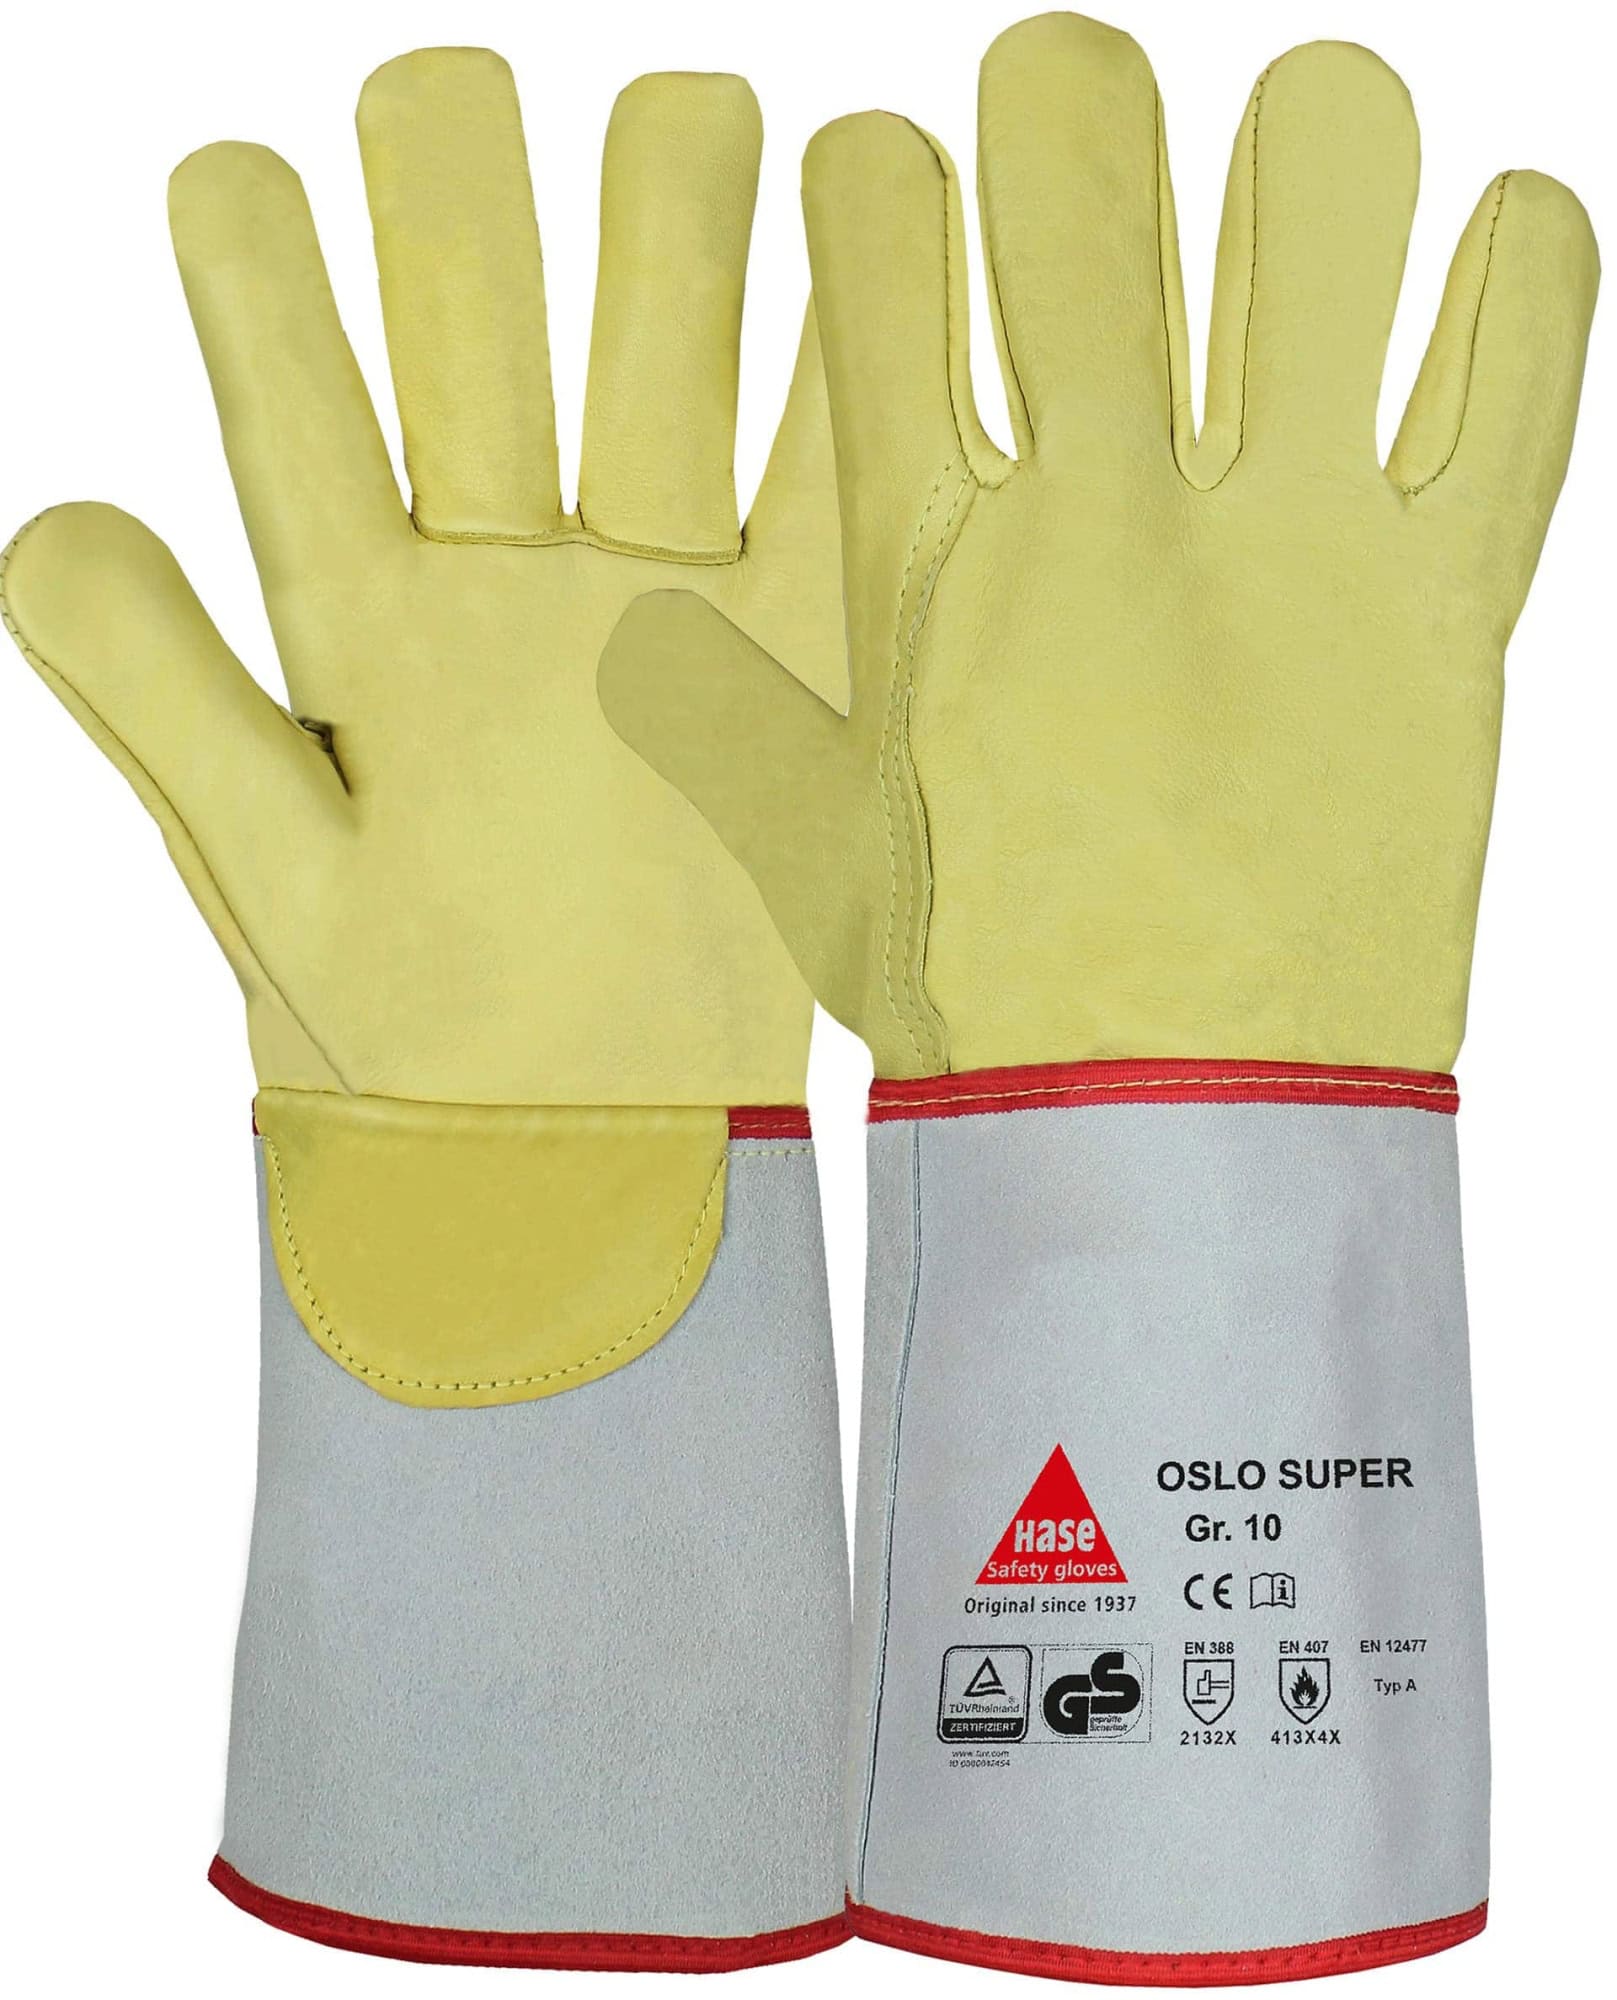 Hase Safety Gloves® OSLO SUPER 105100-9, Größe 9, Typ A, Kat. II, Natur/Gelb, Schweißerhandschuh für schwere Schweißarbeiten